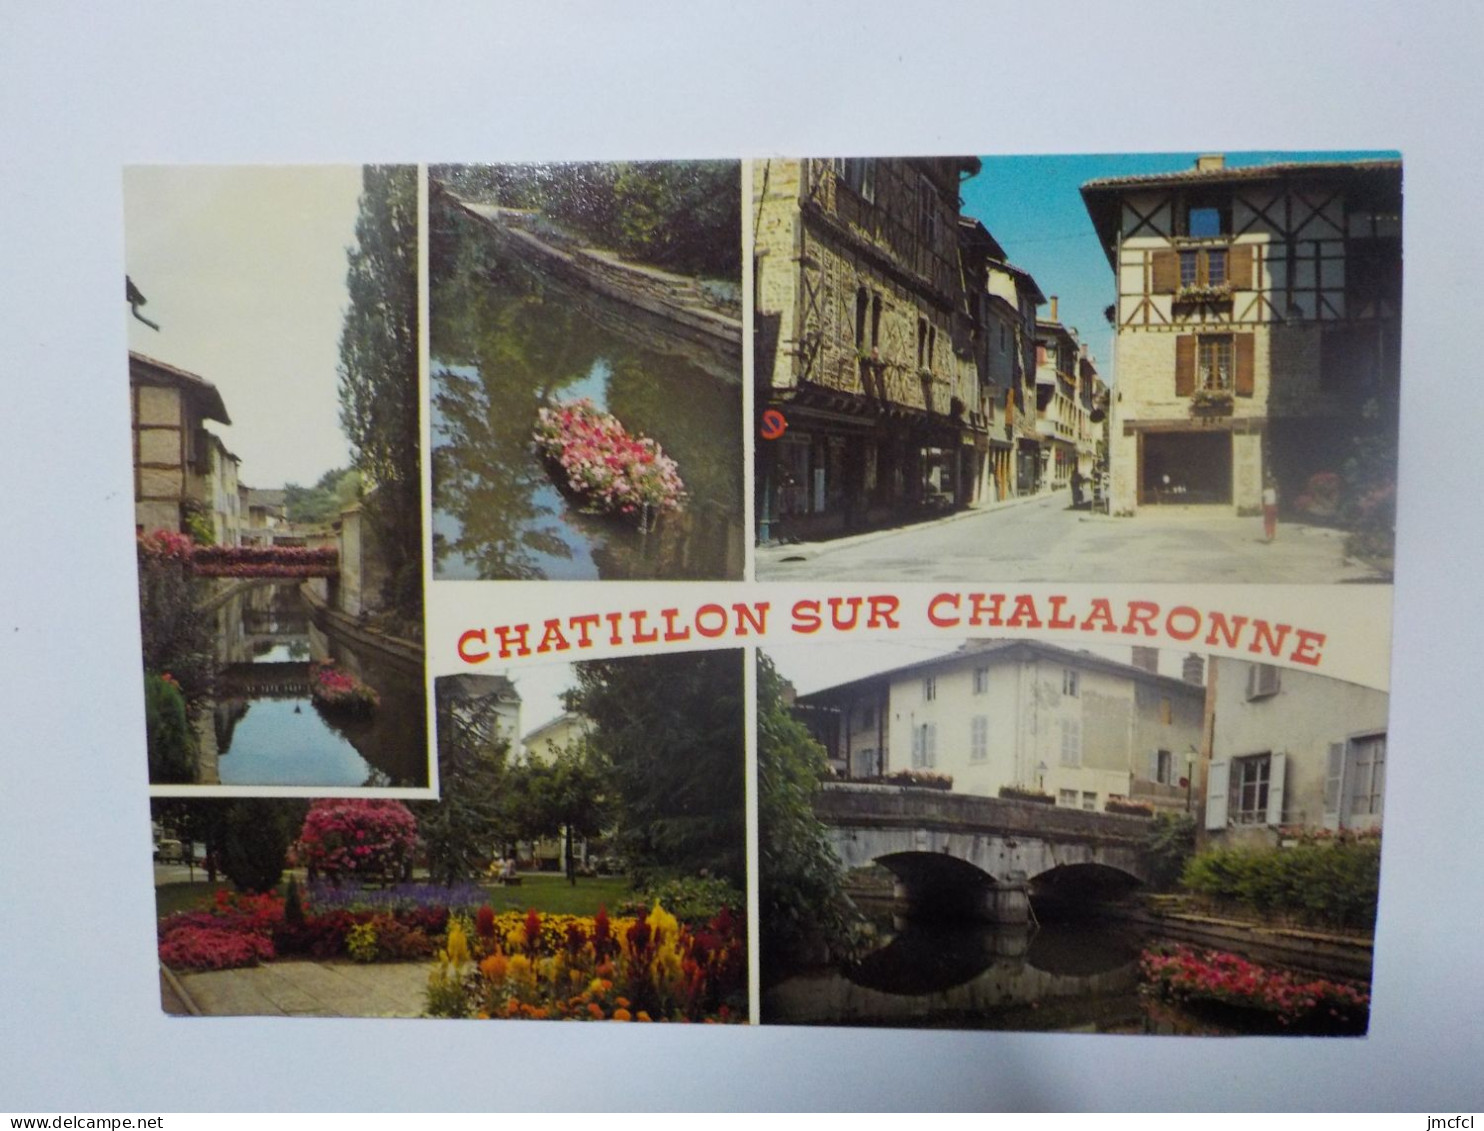 CHATILLON SUR CHALARONNE  Ville Fleurie - Châtillon-sur-Chalaronne